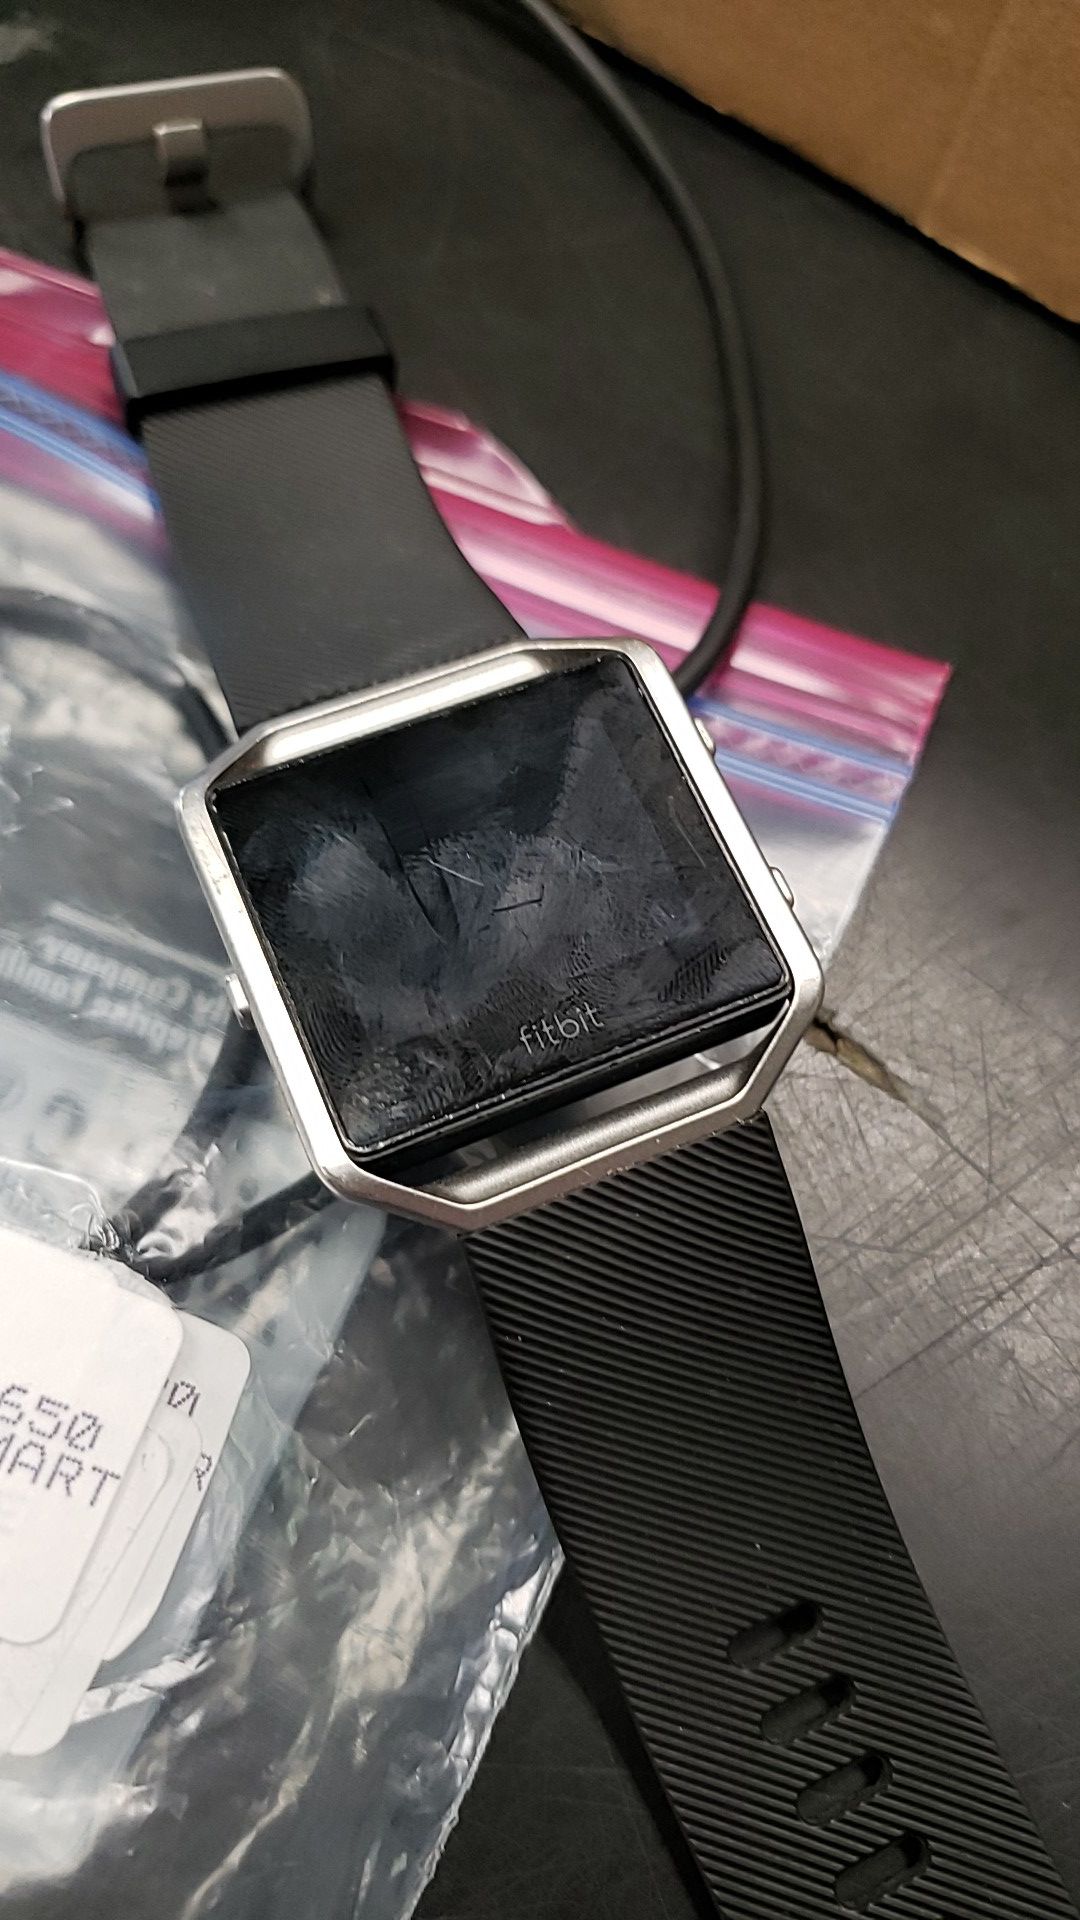 Fitbit blaze smart watch